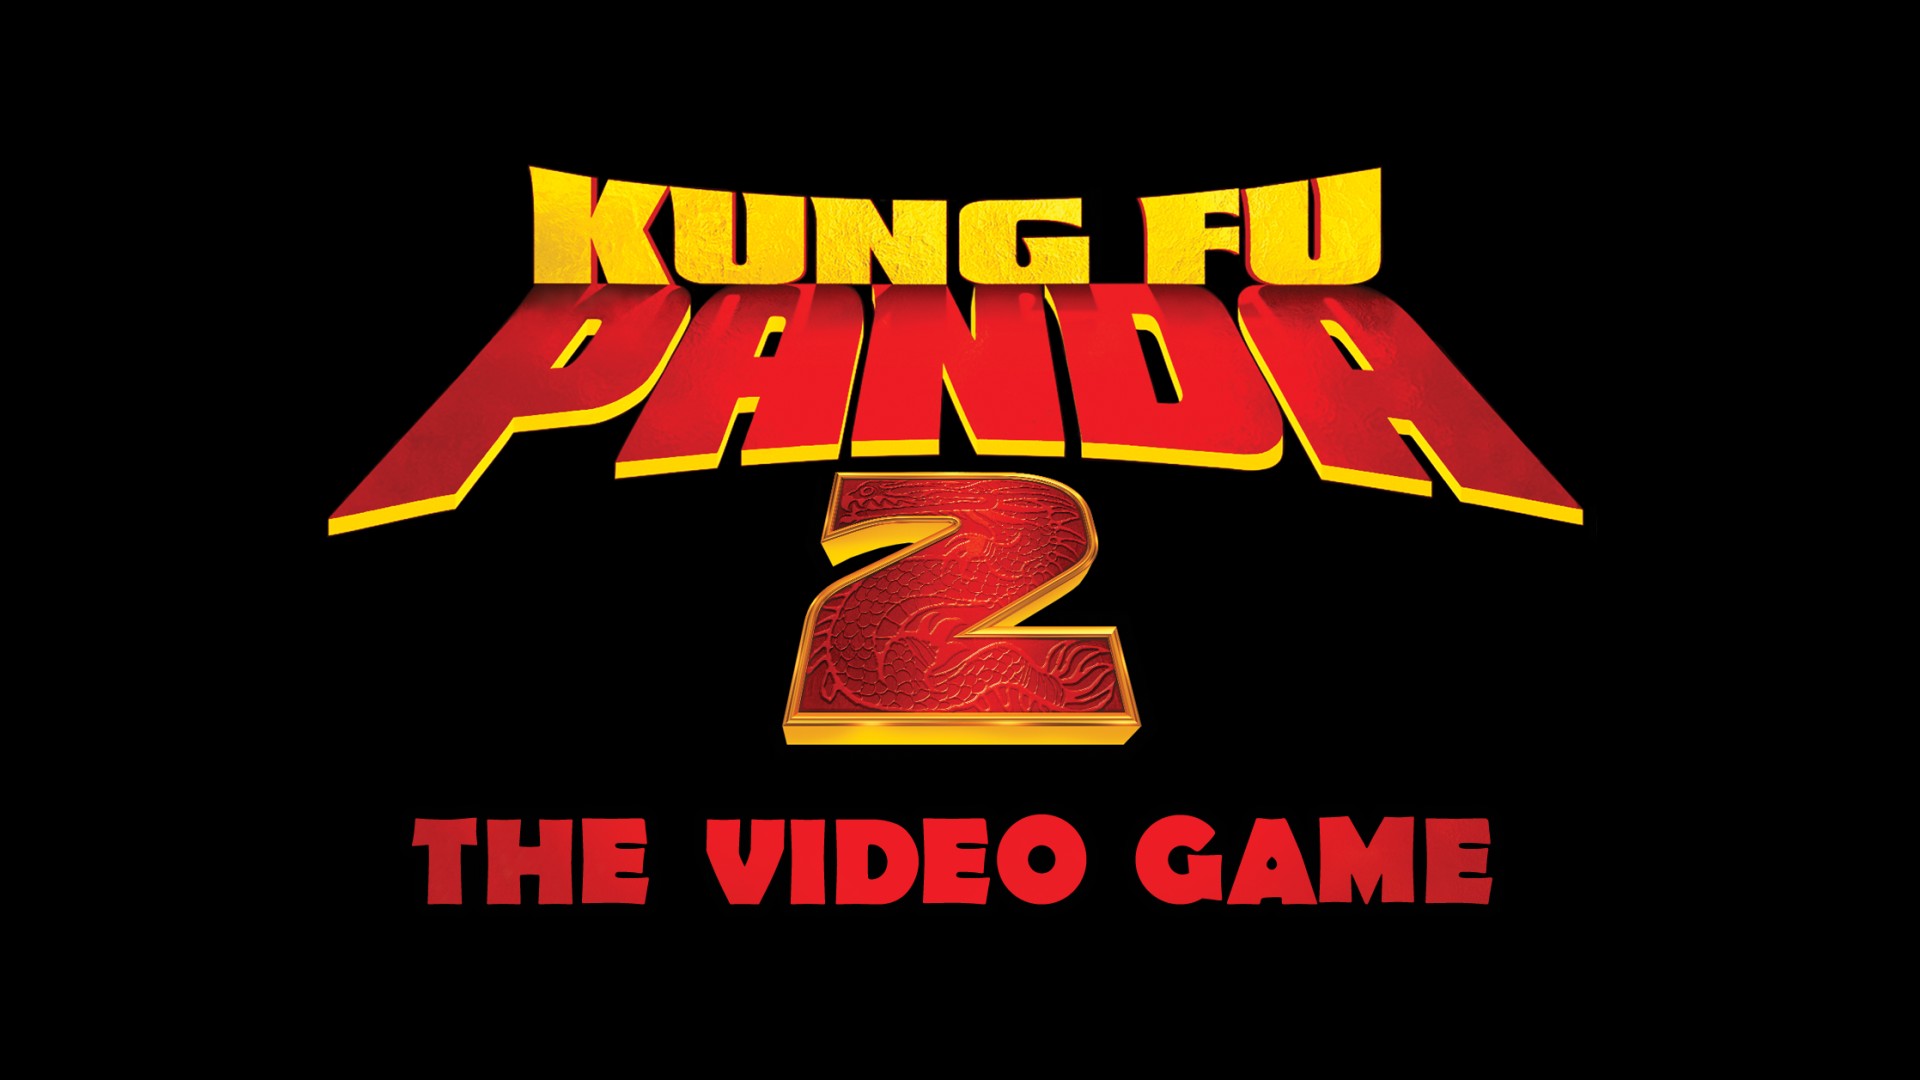 Free download wallpaper Video Game, Kung Fu Panda 2 on your PC desktop